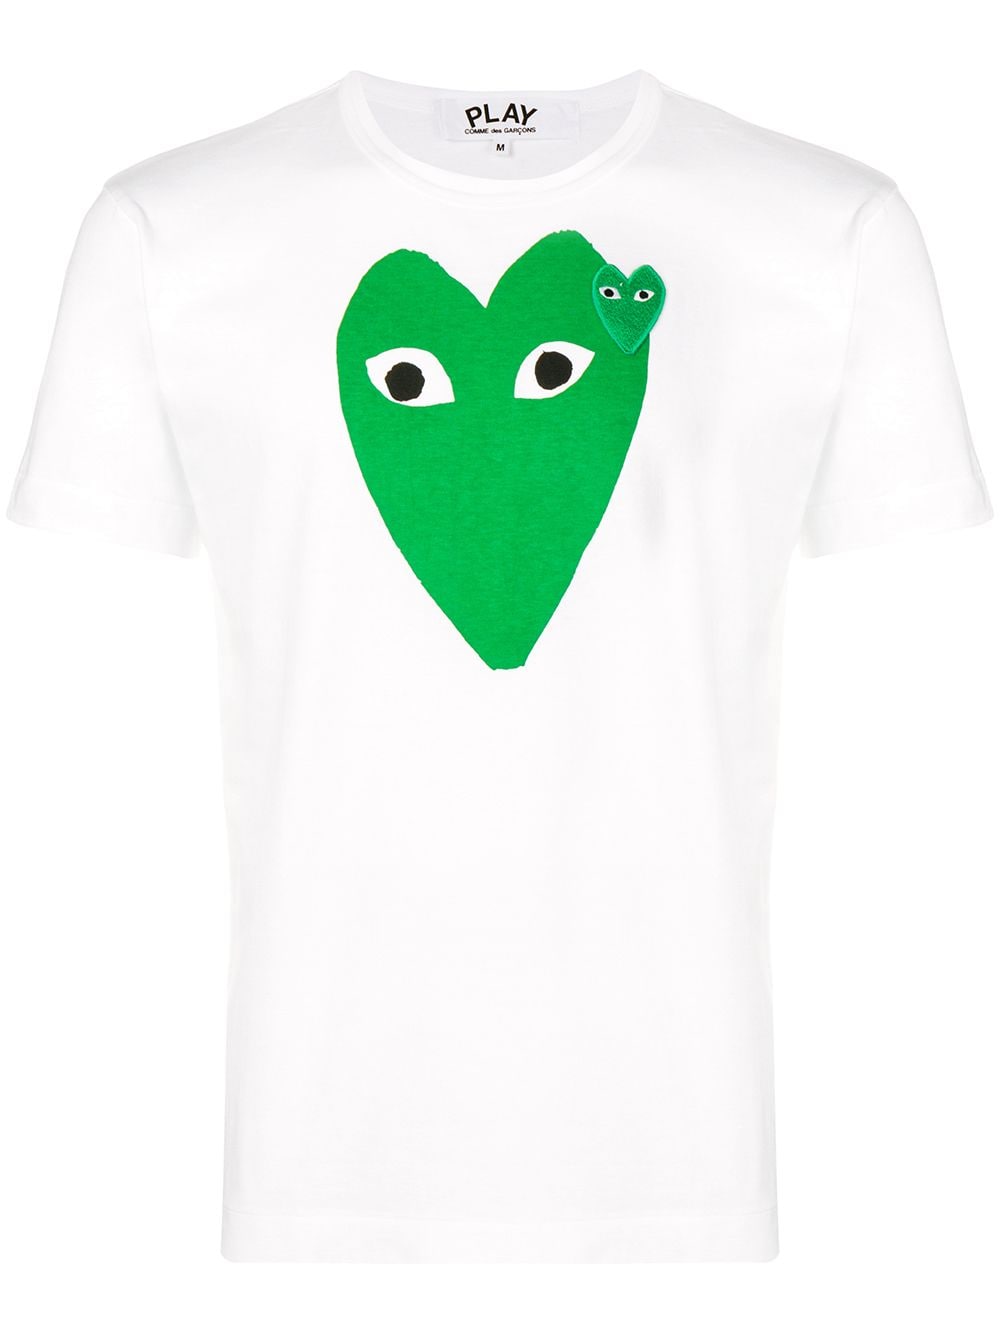 Comme Des Garçons Play heart logo T-shirt